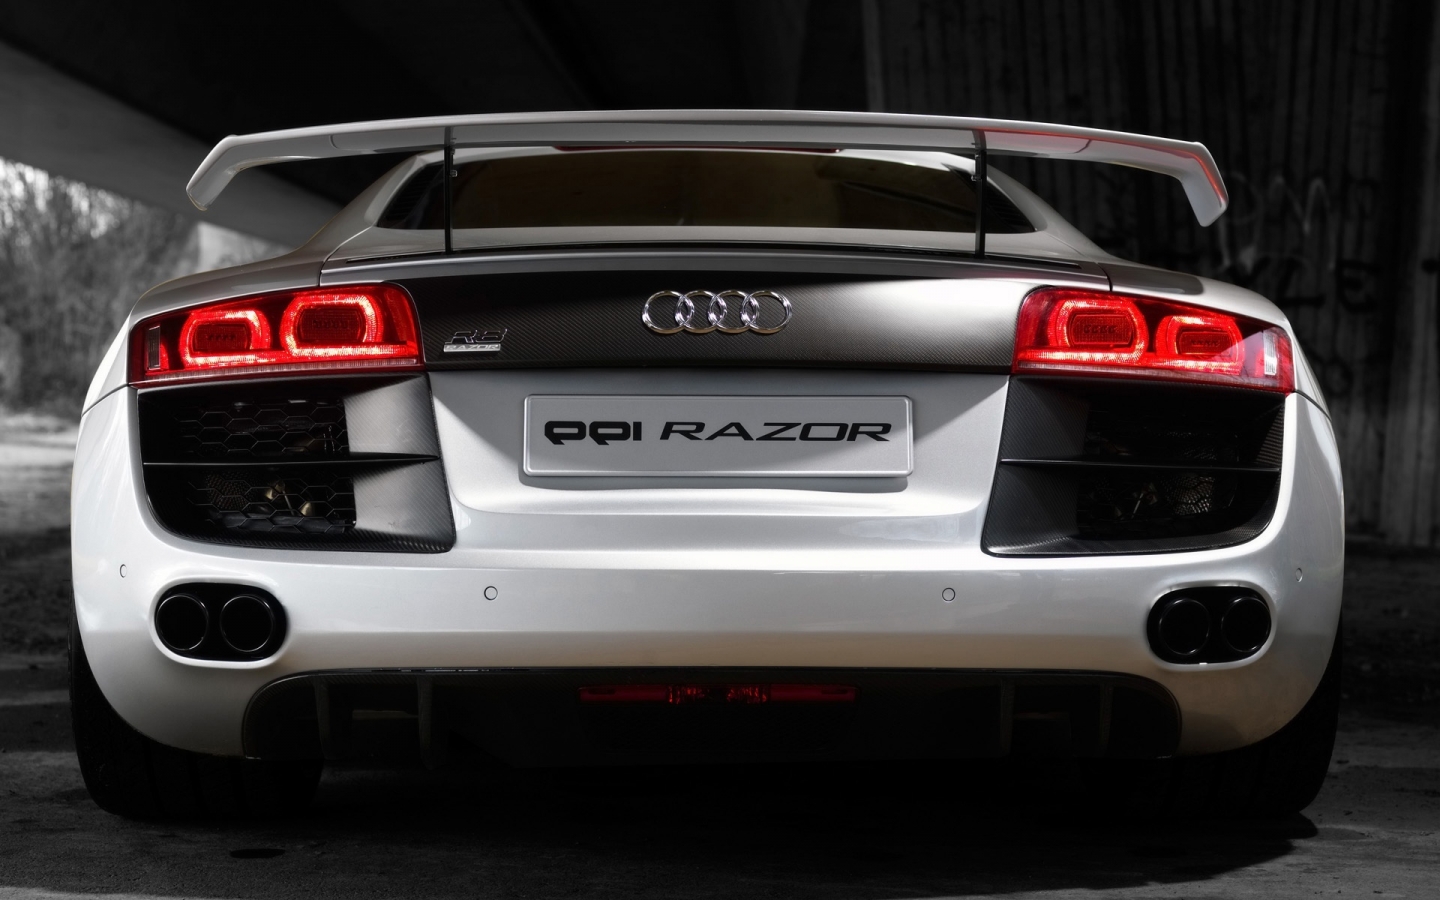 2008 PPI Audi R8 Razor Rear for 1440 x 900 widescreen resolution